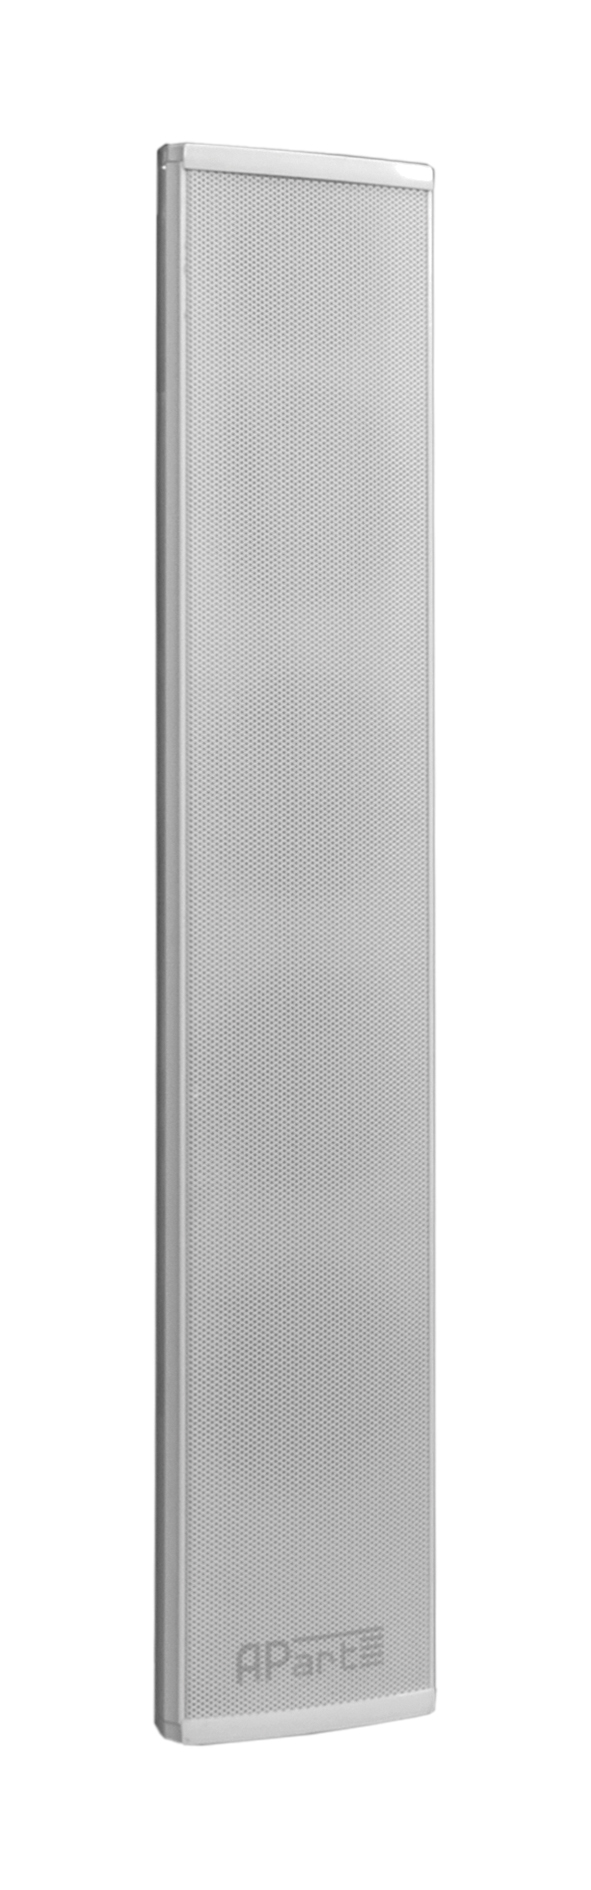 Biamp Desono COLW41 - 4 x 3,3 Klangsäulenlautsprecher 70-100 Volt weiß